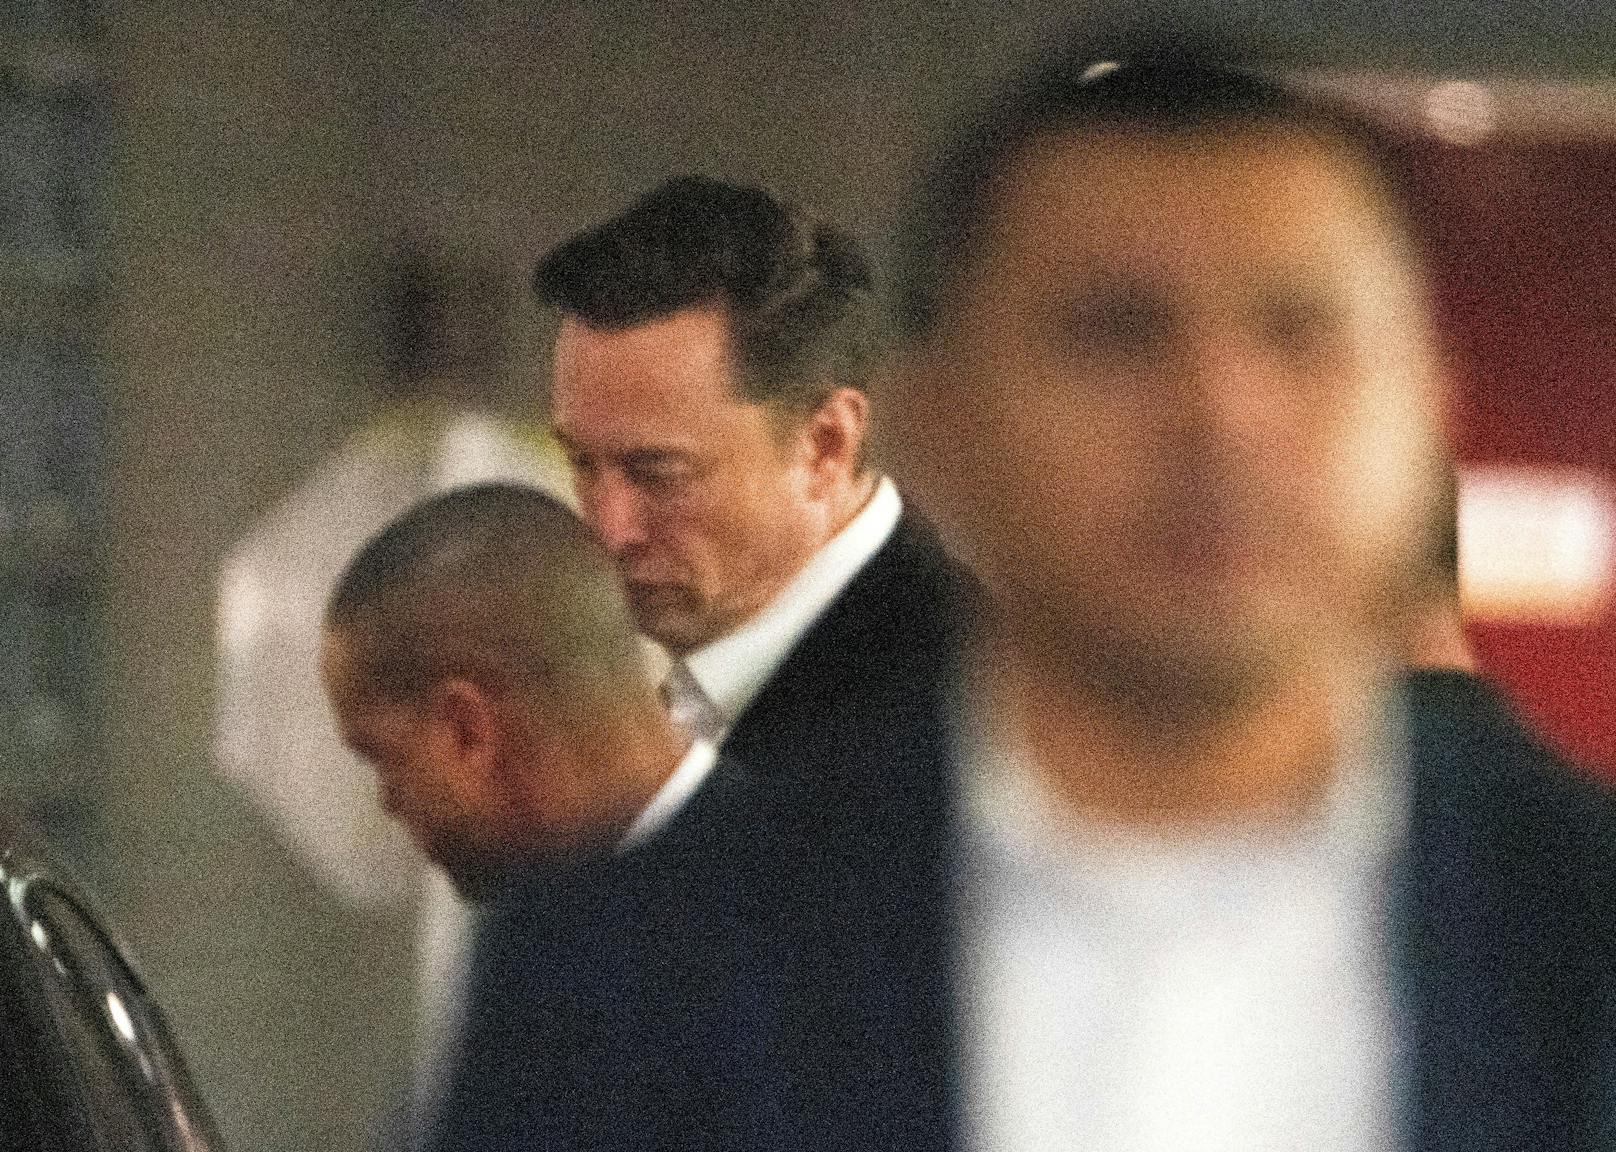 Elon Musk sucht mit Video nach "verrücktem Stalker"